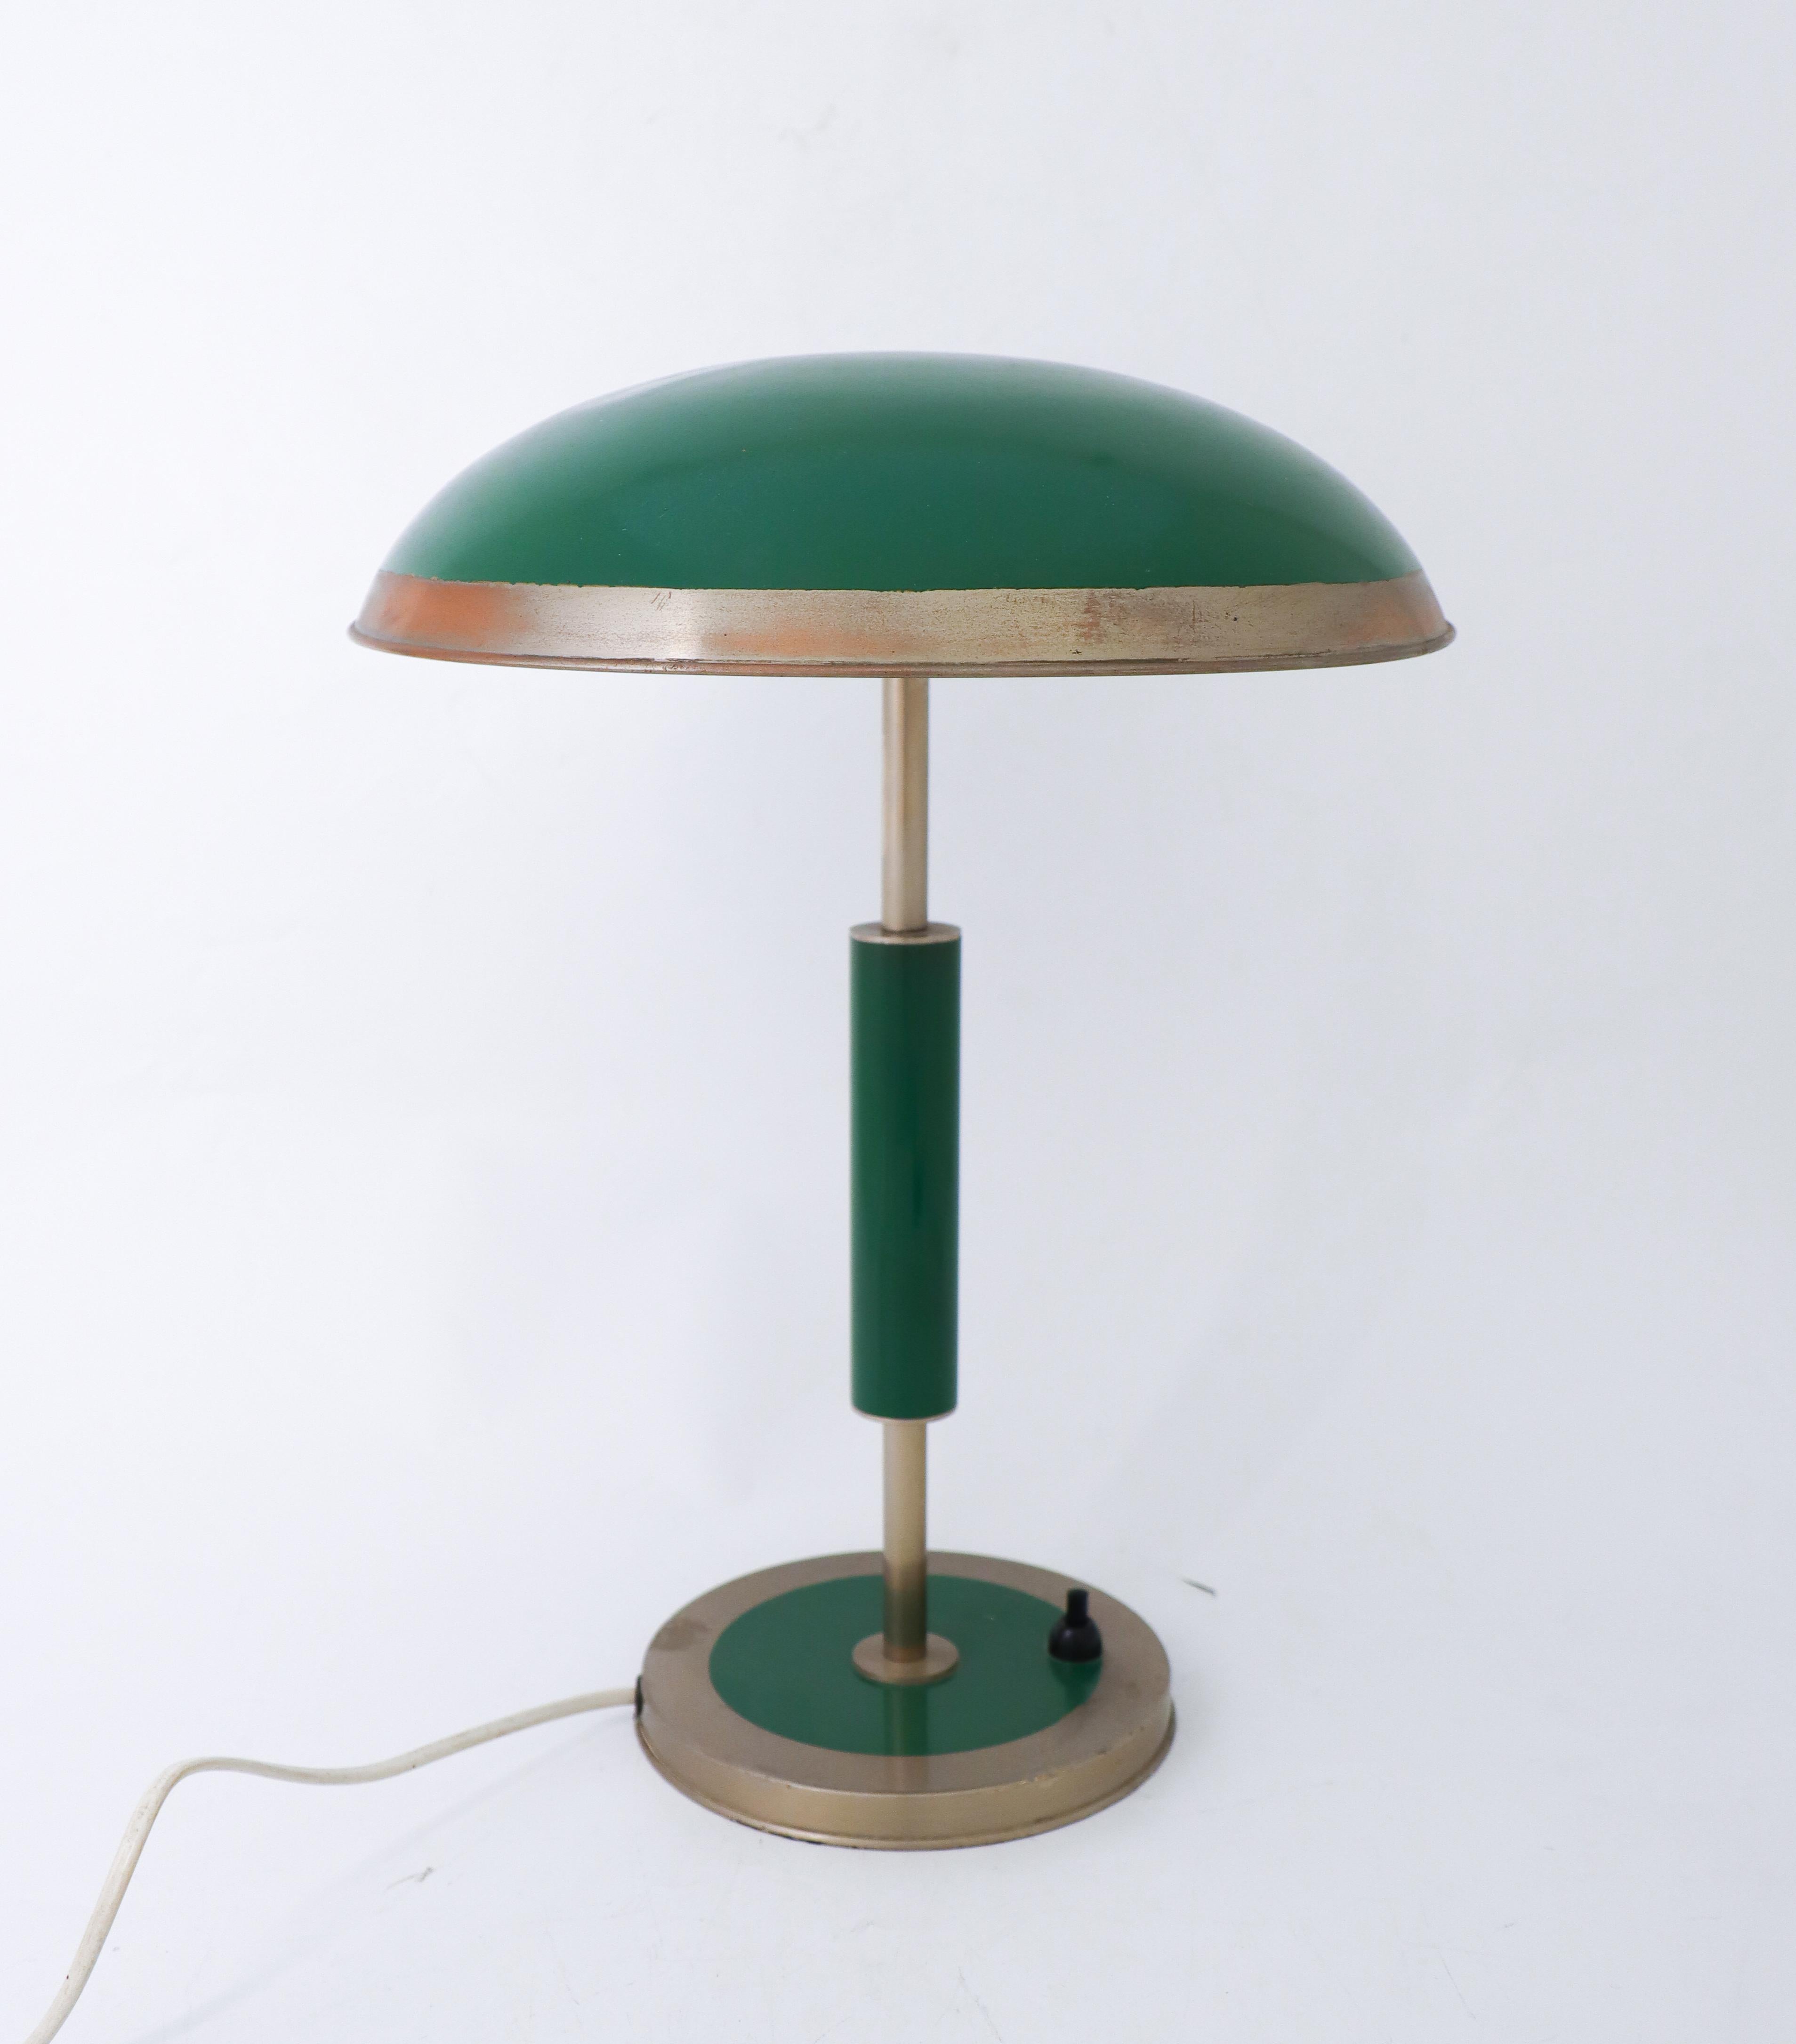 Une superbe lampe de table Art déco verte des années 1930-1940. Malheureusement, je ne sais pas qui en est le concepteur. Il mesure 28,5 cm (11,4